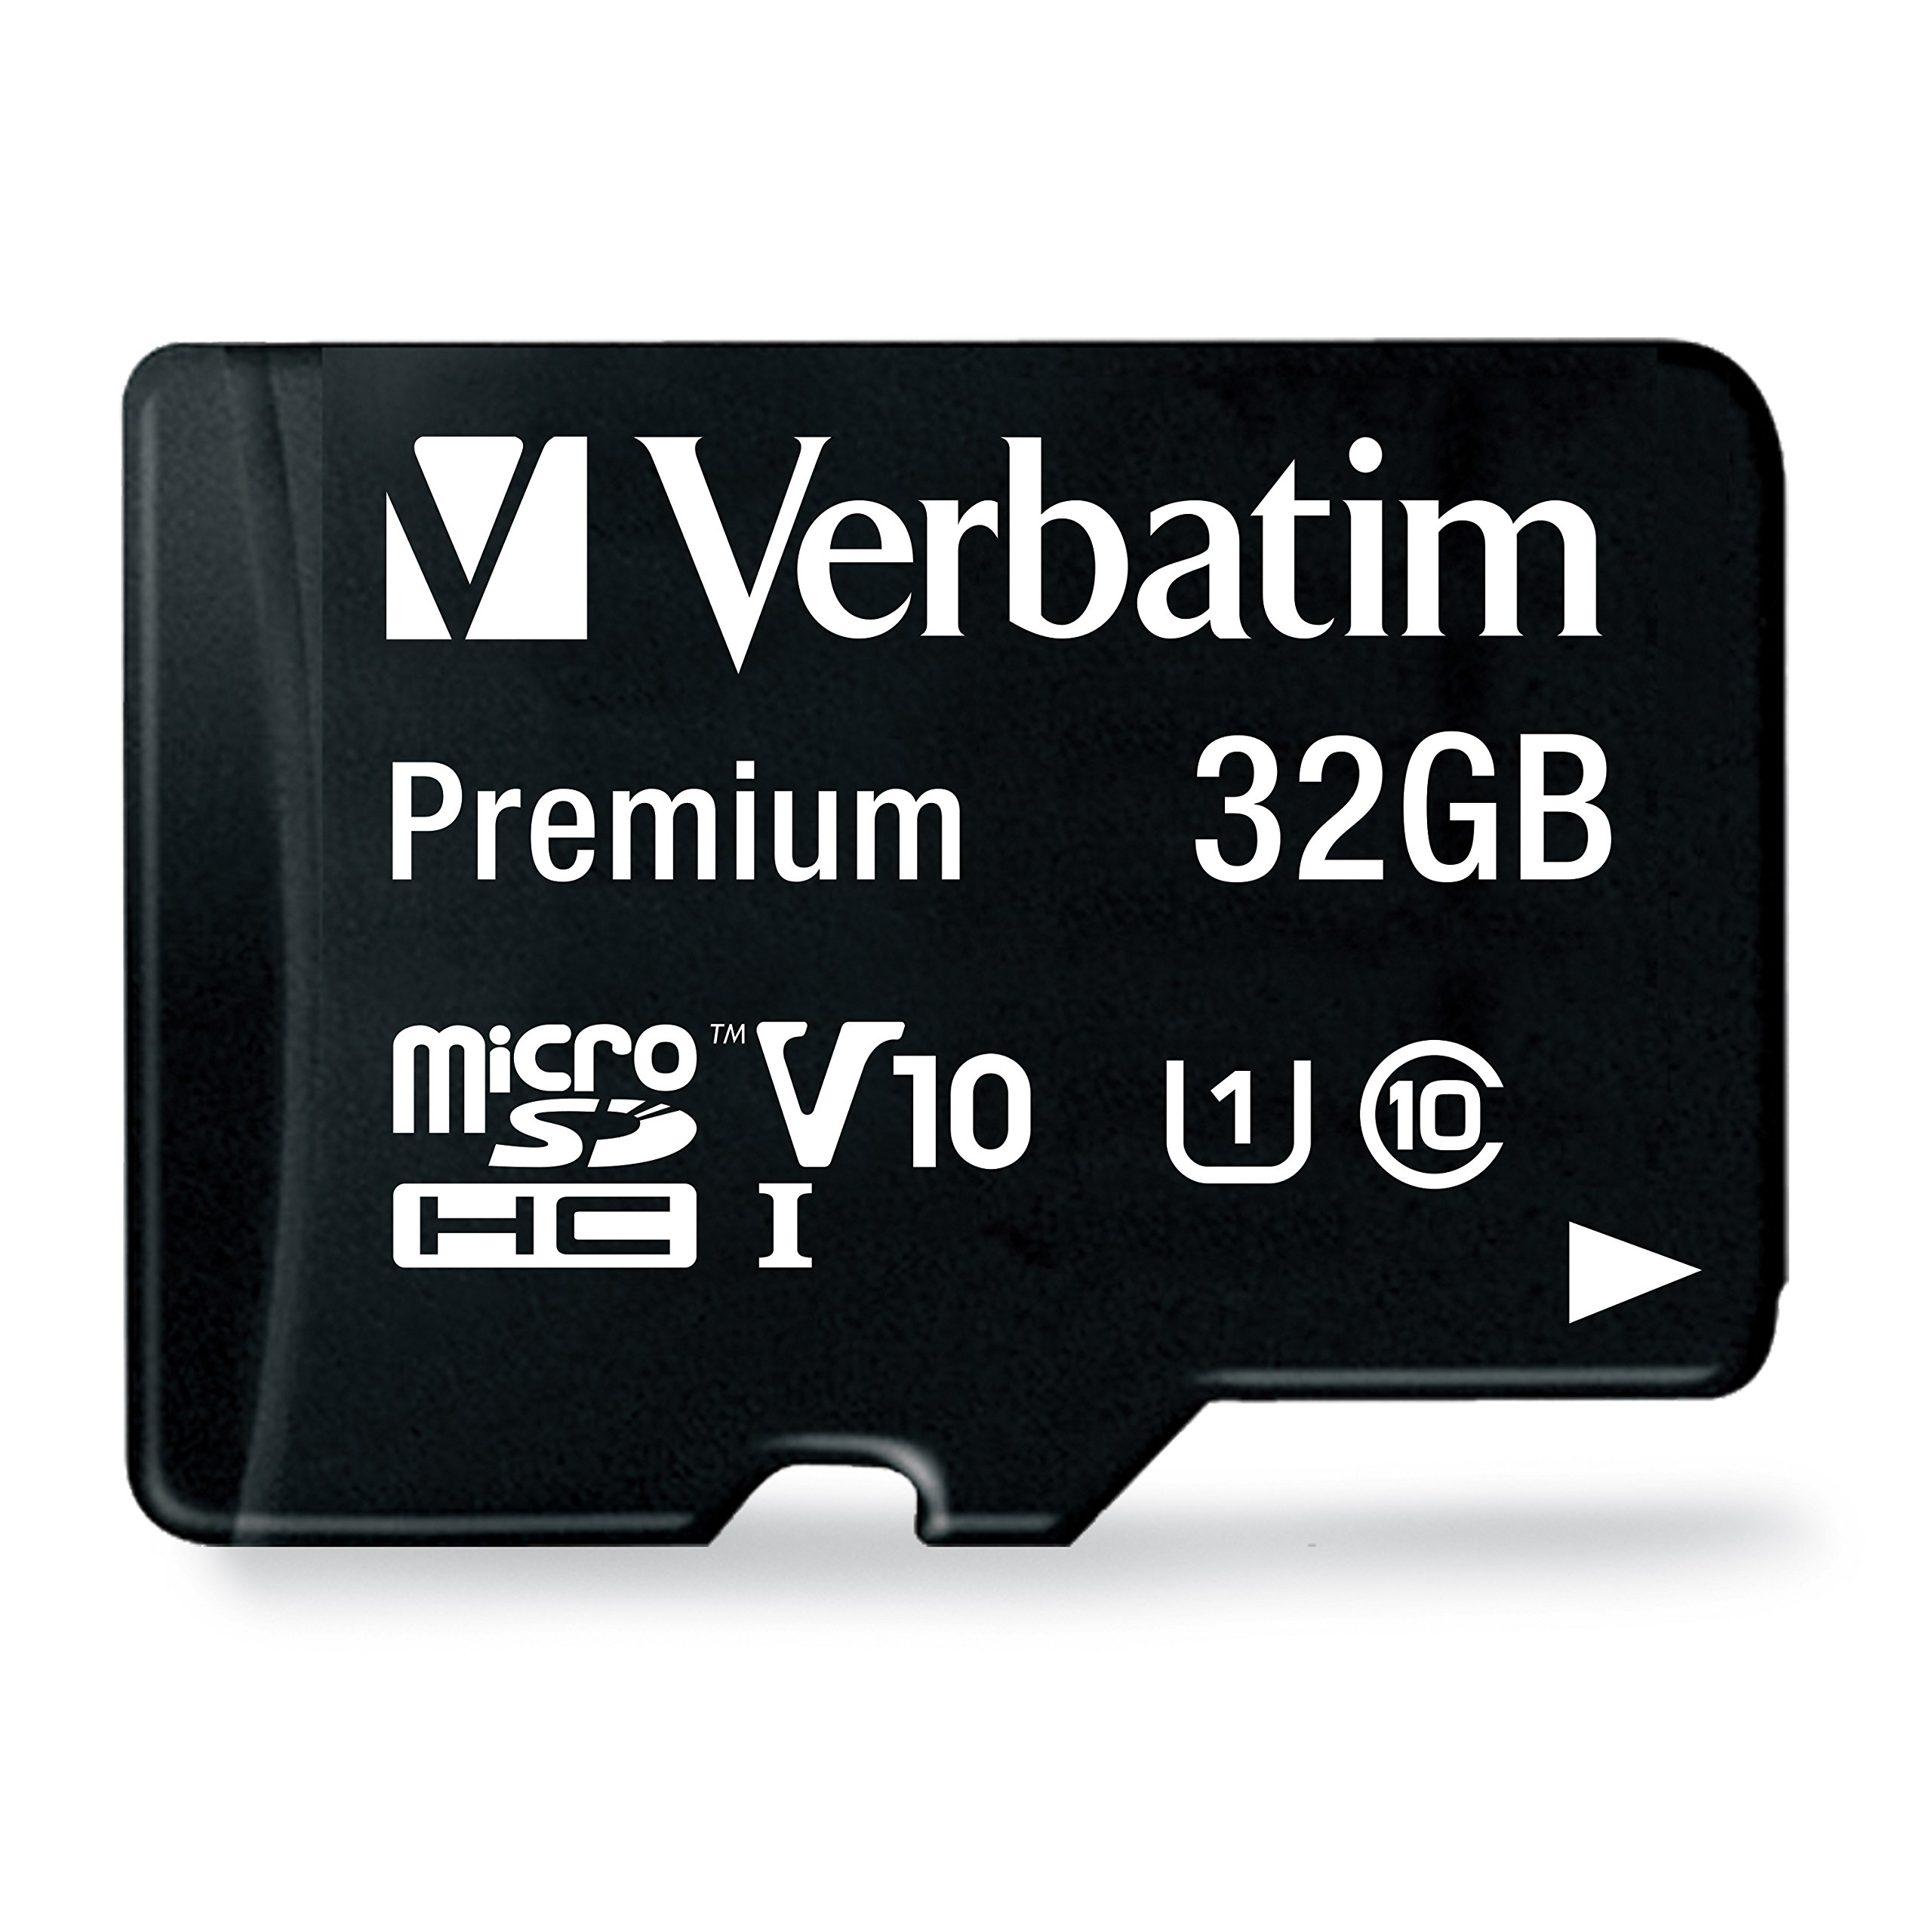 Microsd Verbatim 32GB clase 10 con adapt Tarjeta de memoria microSD hc premium de 32 GB con adaptador. Clase de velocidad de video v10 - admite la grabación en full HD (1080p) interfaz uhs-i, con velocidad u1. Velocidad de lectura de hasta 90 MB/S.                                                 ador                                     - 44083